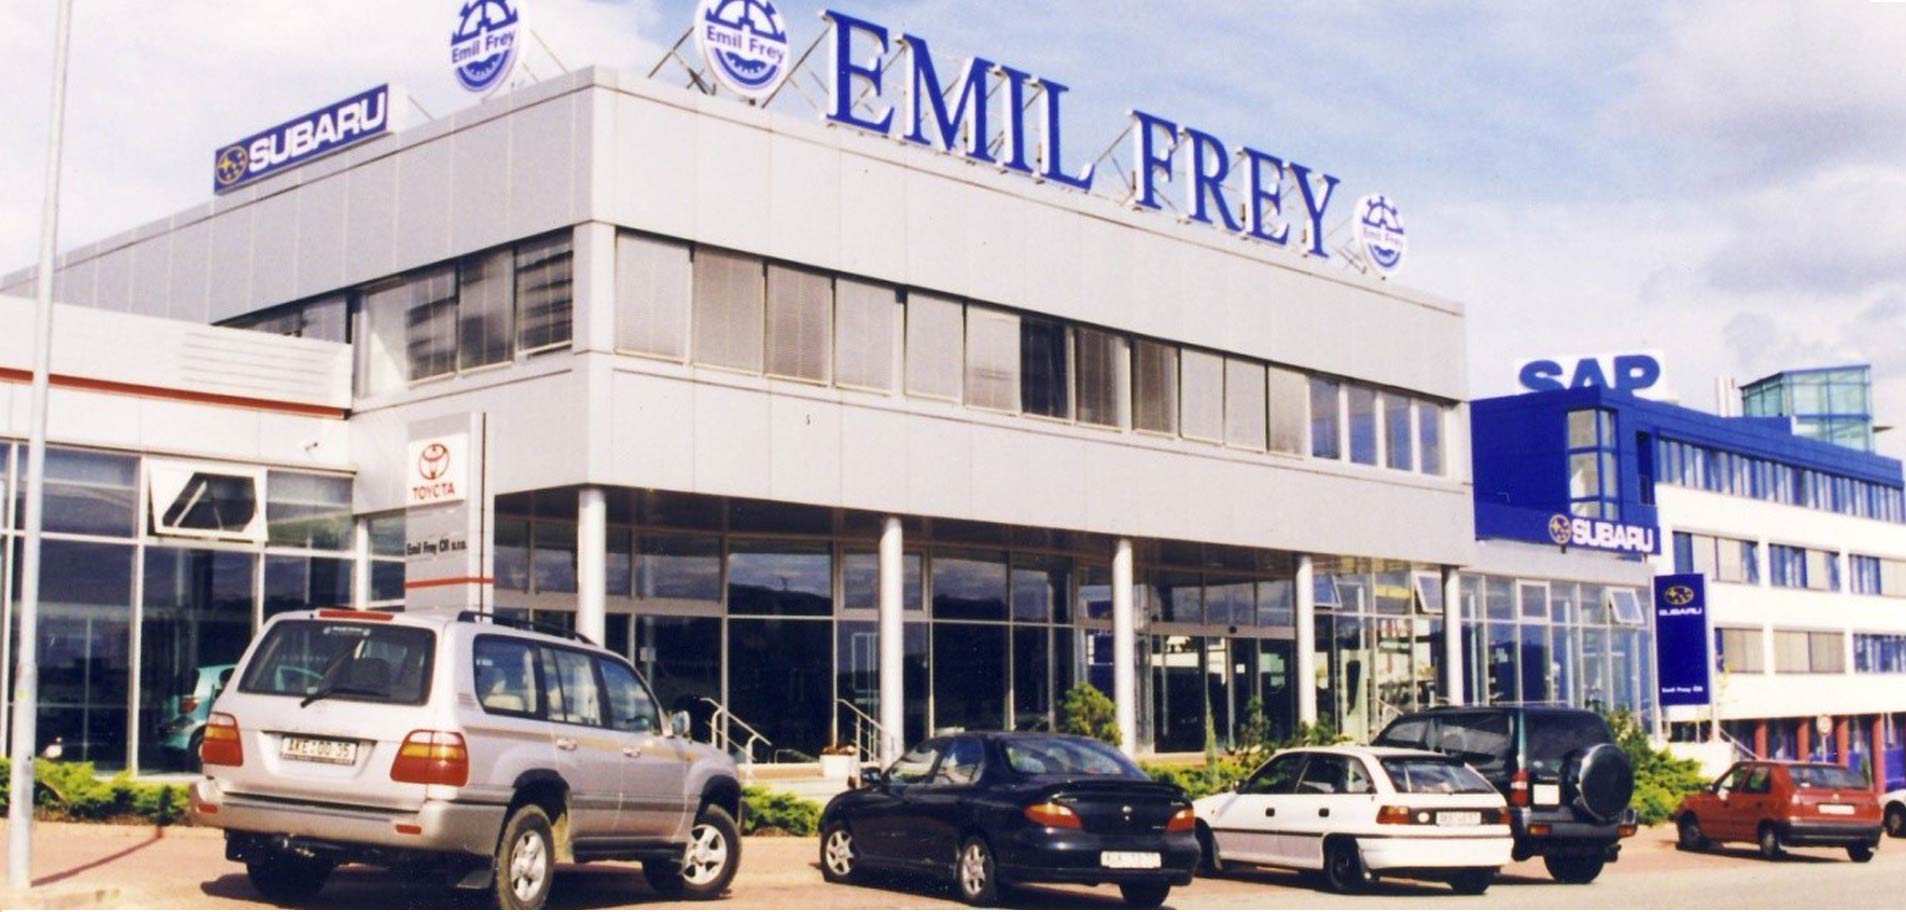 První vlastní autosalon Emil Frey postavený na zelené louce byl otevřen v roce 1996 na Pekařské ulici